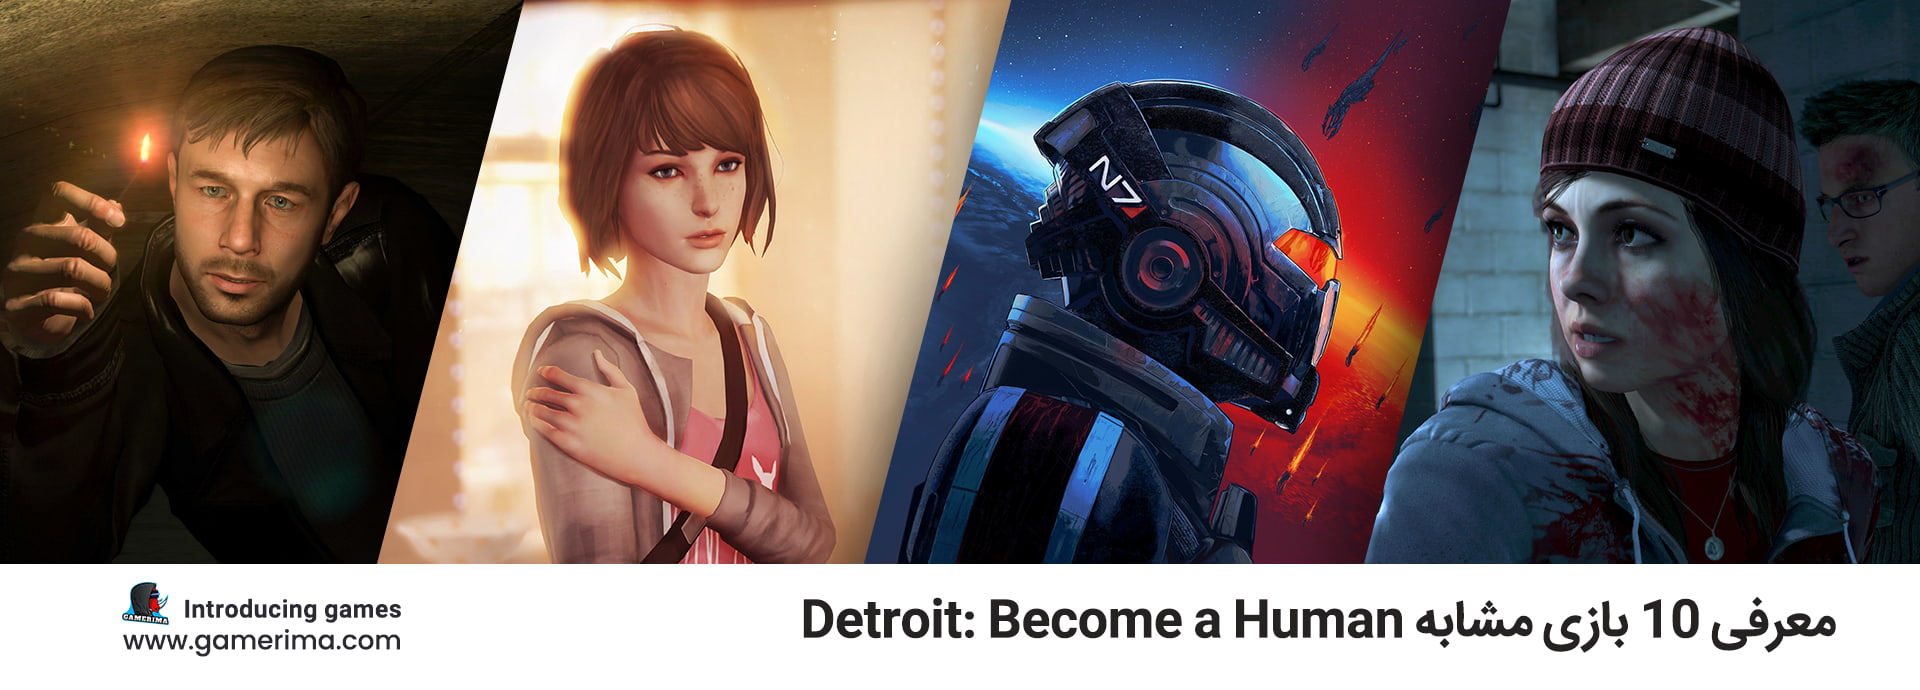 معرفی ۱۰ بازی مشابه Detroit: Become a Human